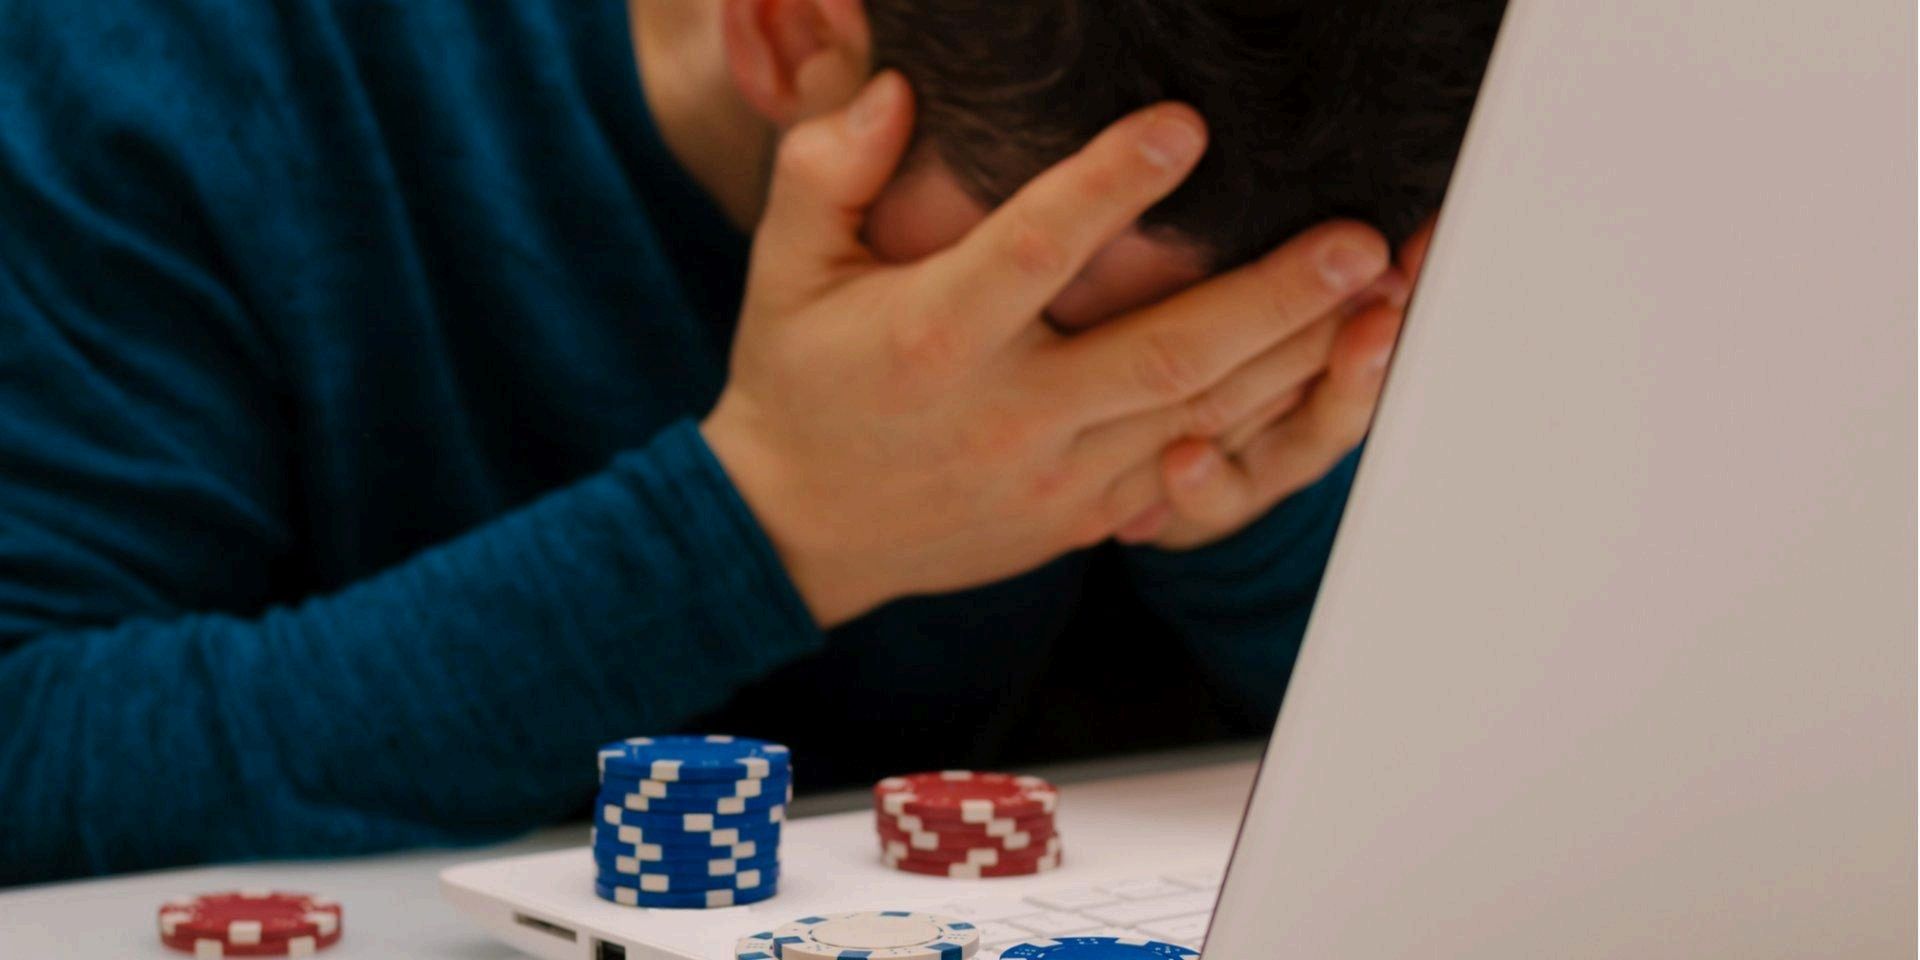 Аналітики оприлюднили узагальнений портрет користувача онлайн-казино: більшість гравців безпроблемні, молоді та освічені